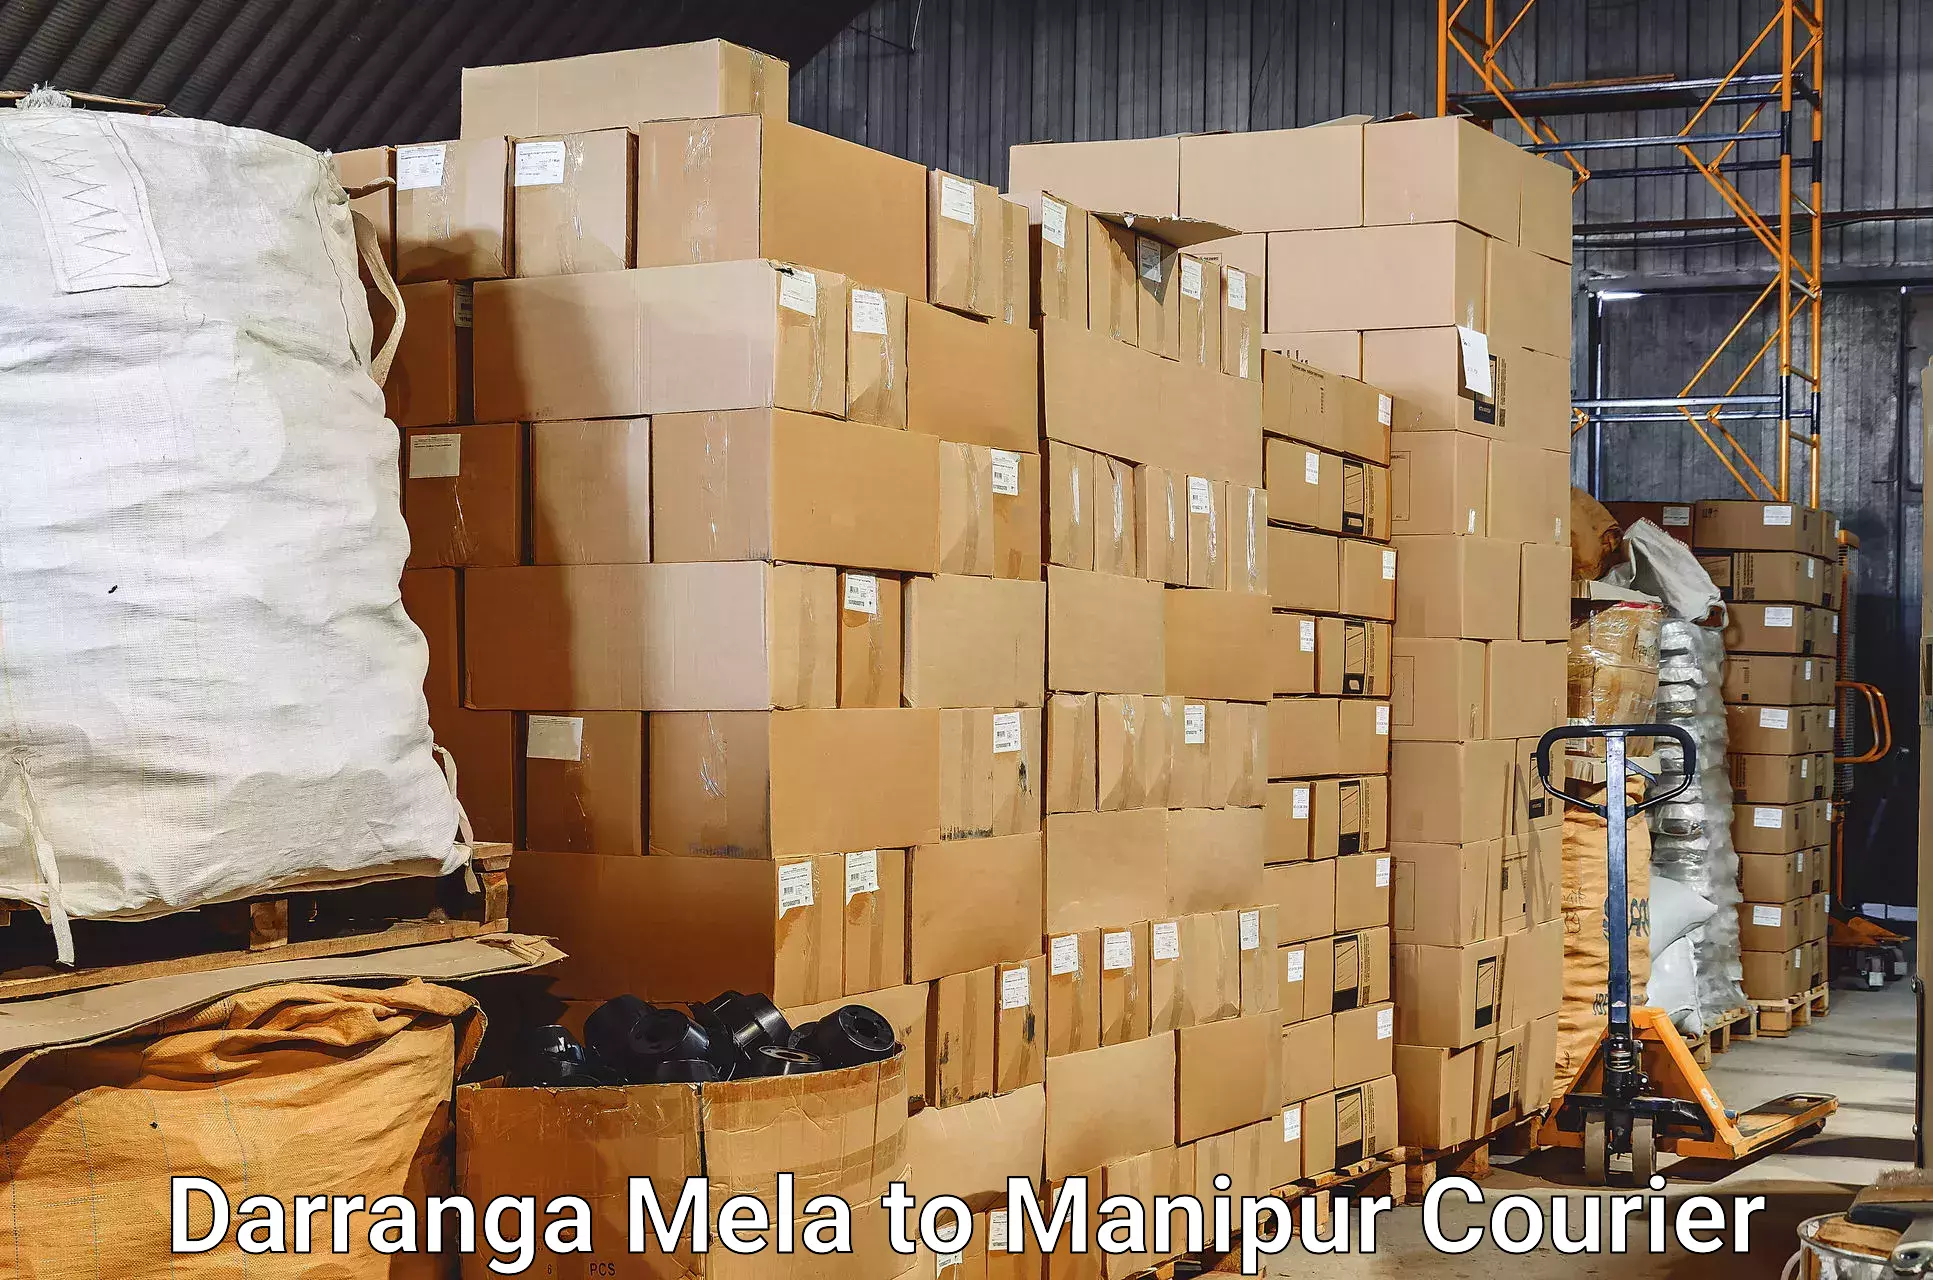 Automated luggage transport in Darranga Mela to Kanti